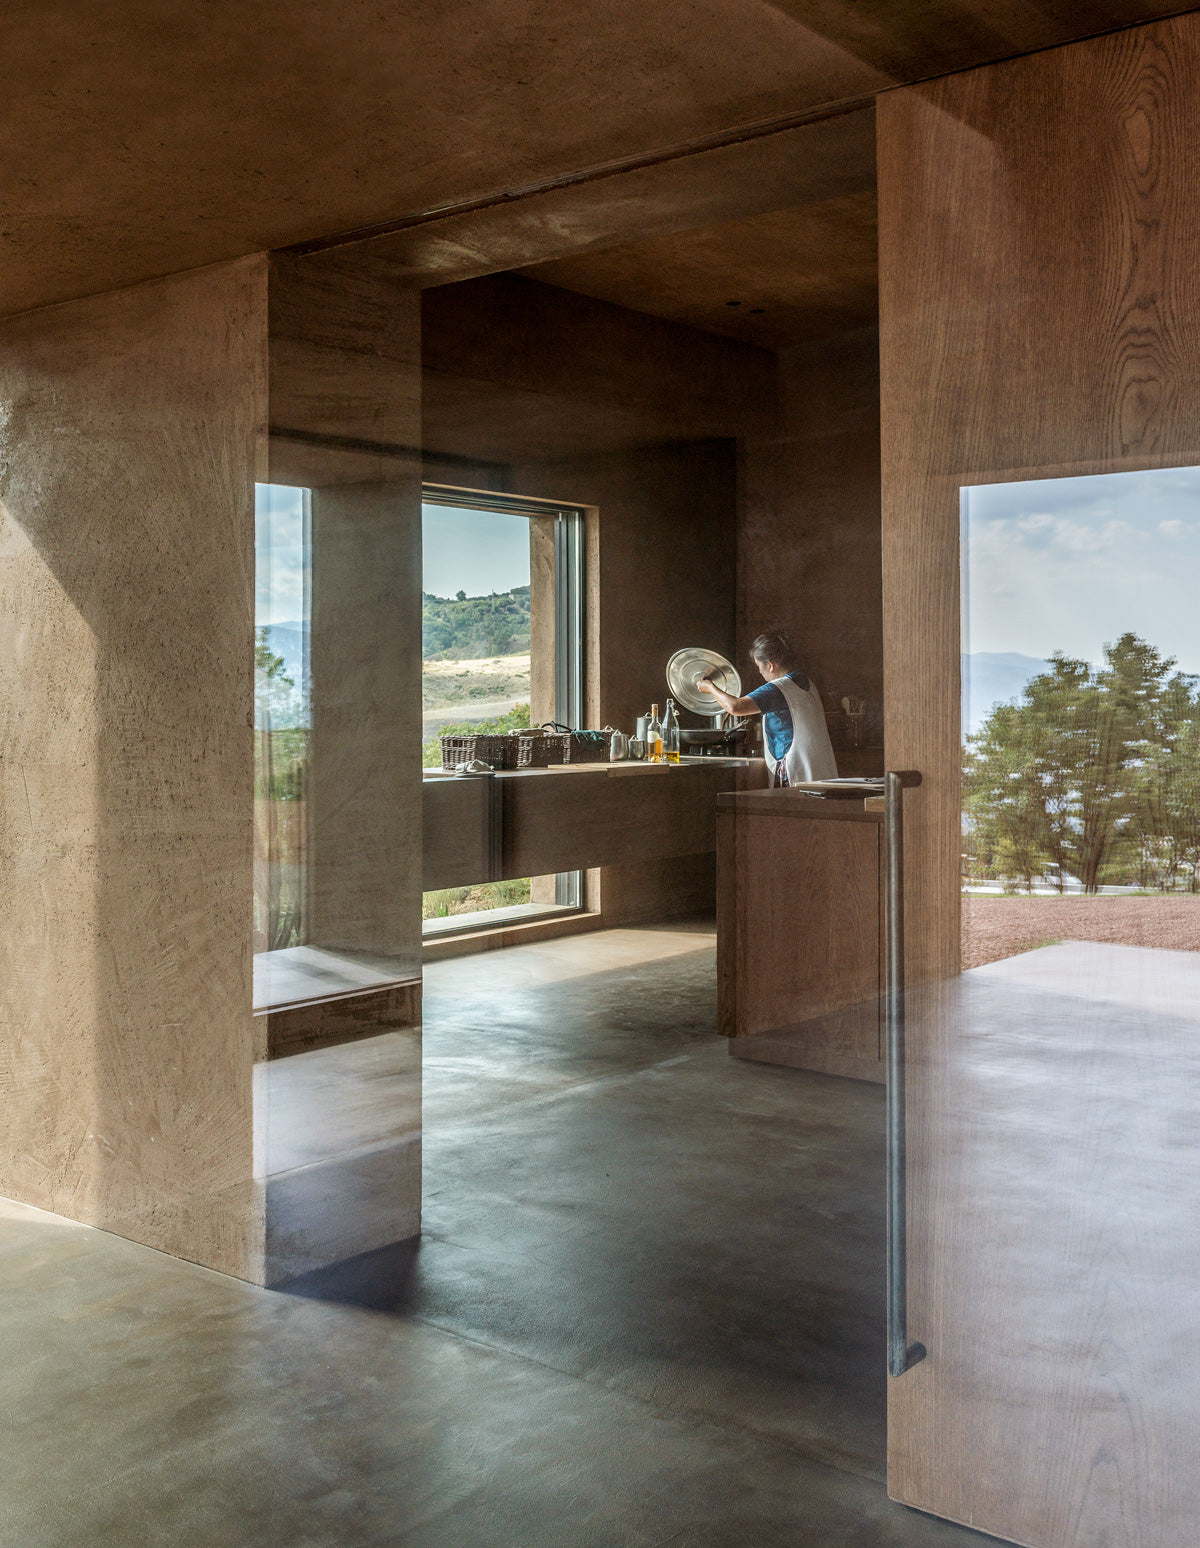 Villa Ra propone un enfoque alternativo a la vivienda en el paisaje rural de Calabria,y el mayor reto que representó el proyecto, según cuenta el despacho a Container, fue entender el paisaje.